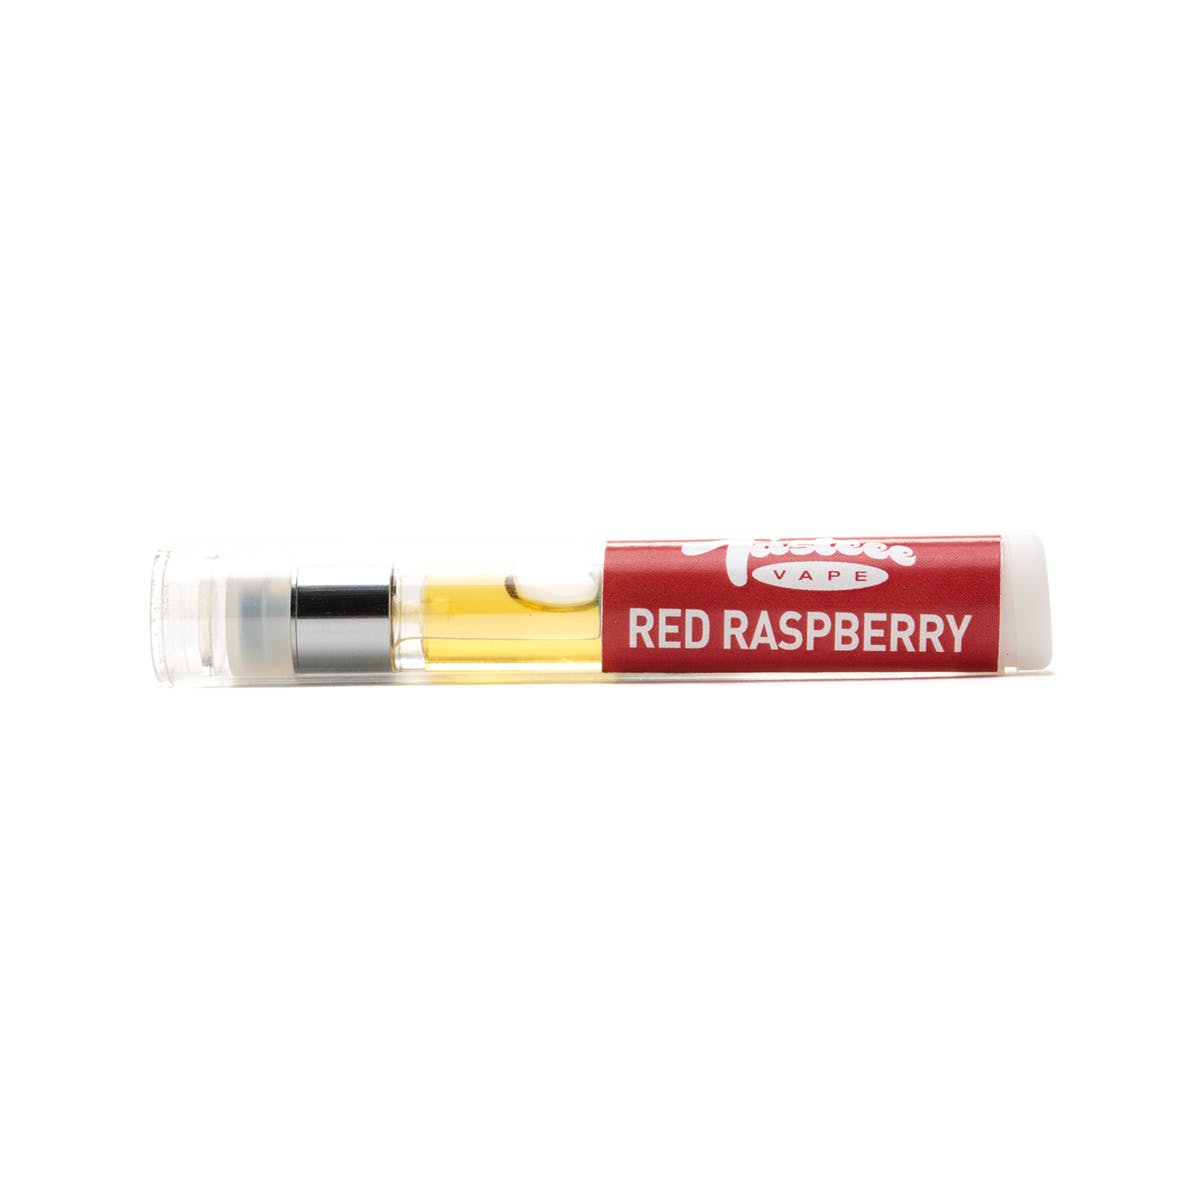 Red Raspberry Tasteee Cartridge